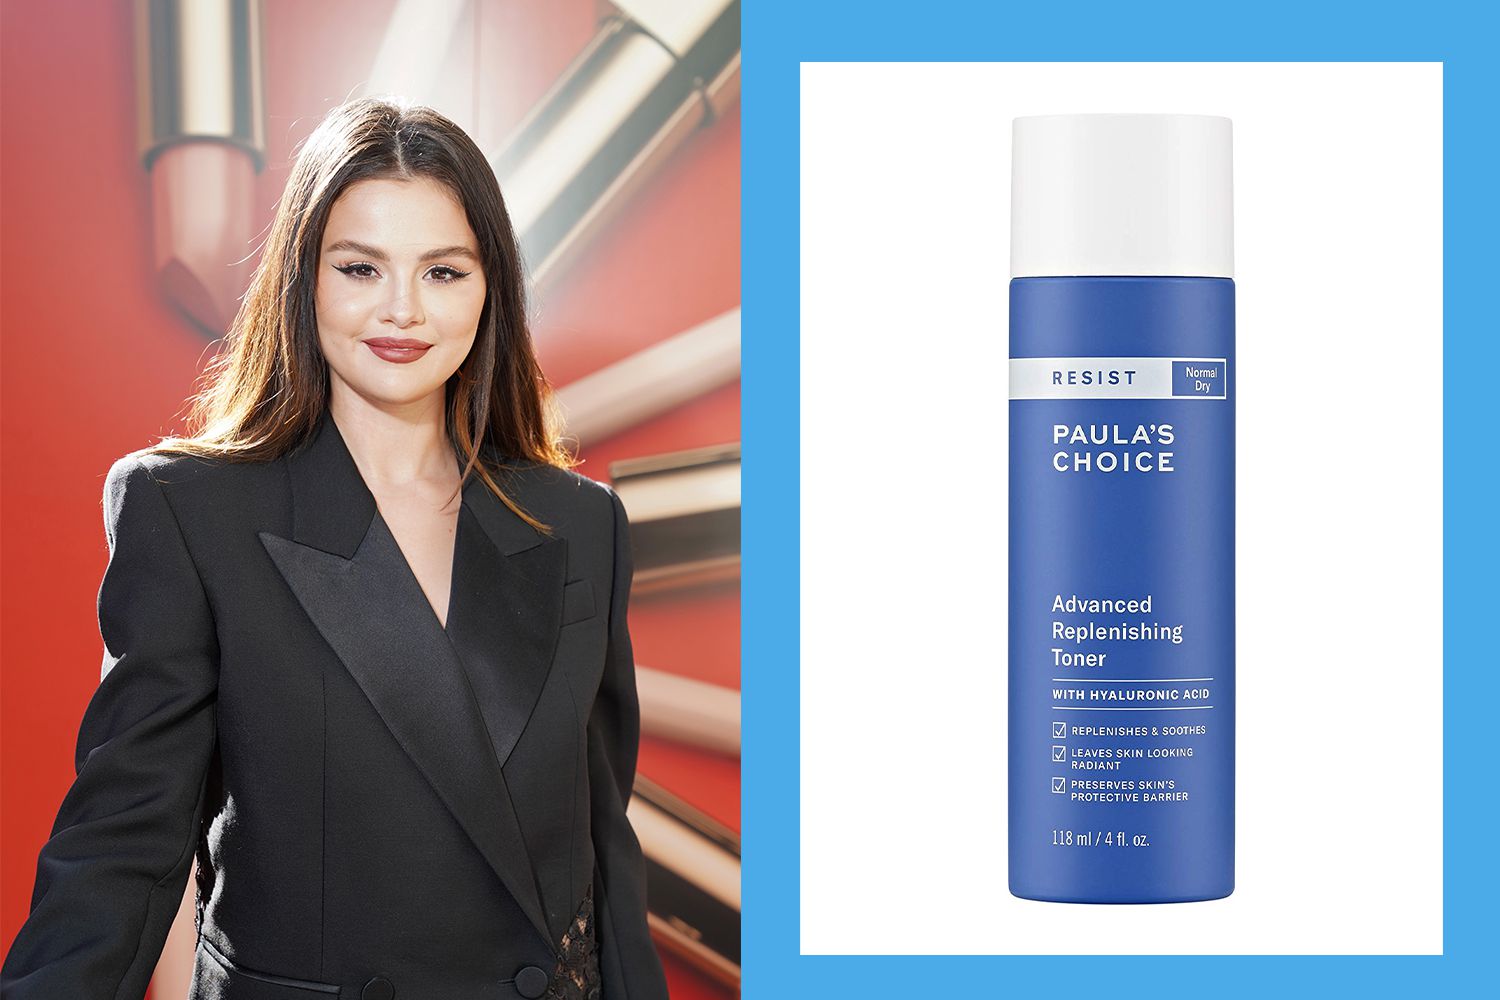 Los productos para el cuidado de la piel que usa Selena Gomez antes de aplicar una cara completa de maquillaje comienzan en menos de $ 10